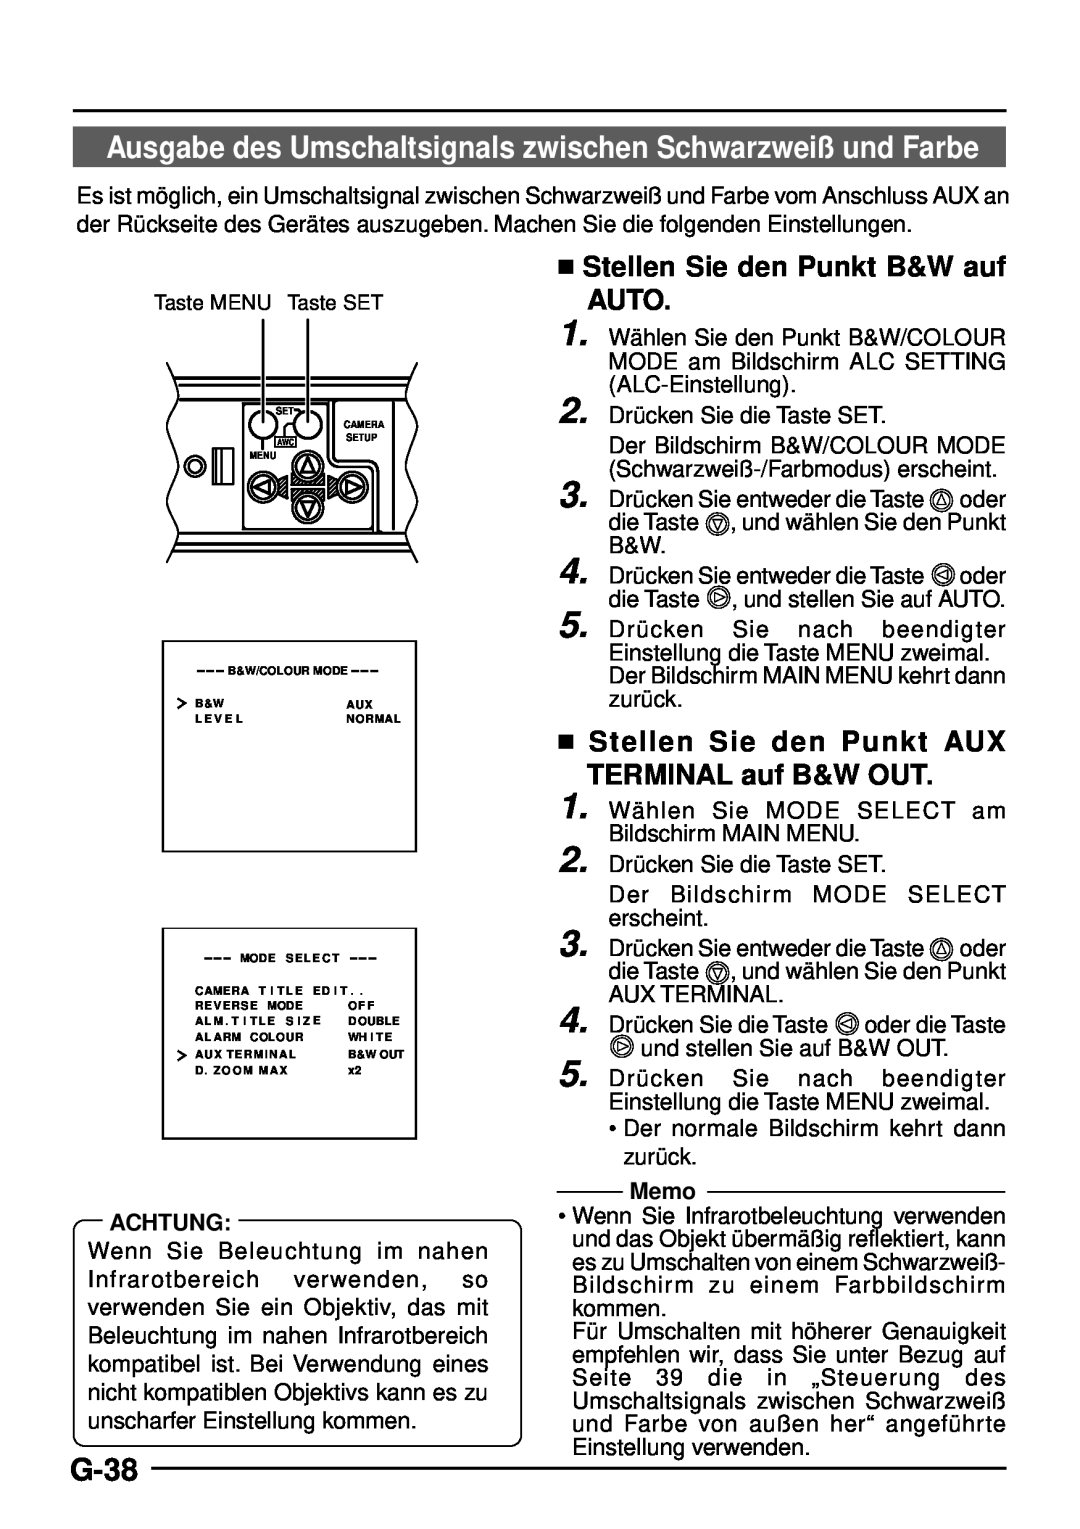 JVC TK-C1460 Ausgabe des Umschaltsignals zwischen Schwarzweiß und Farbe, G-38,  Stellen Sie den Punkt B&W auf AUTO, Memo 